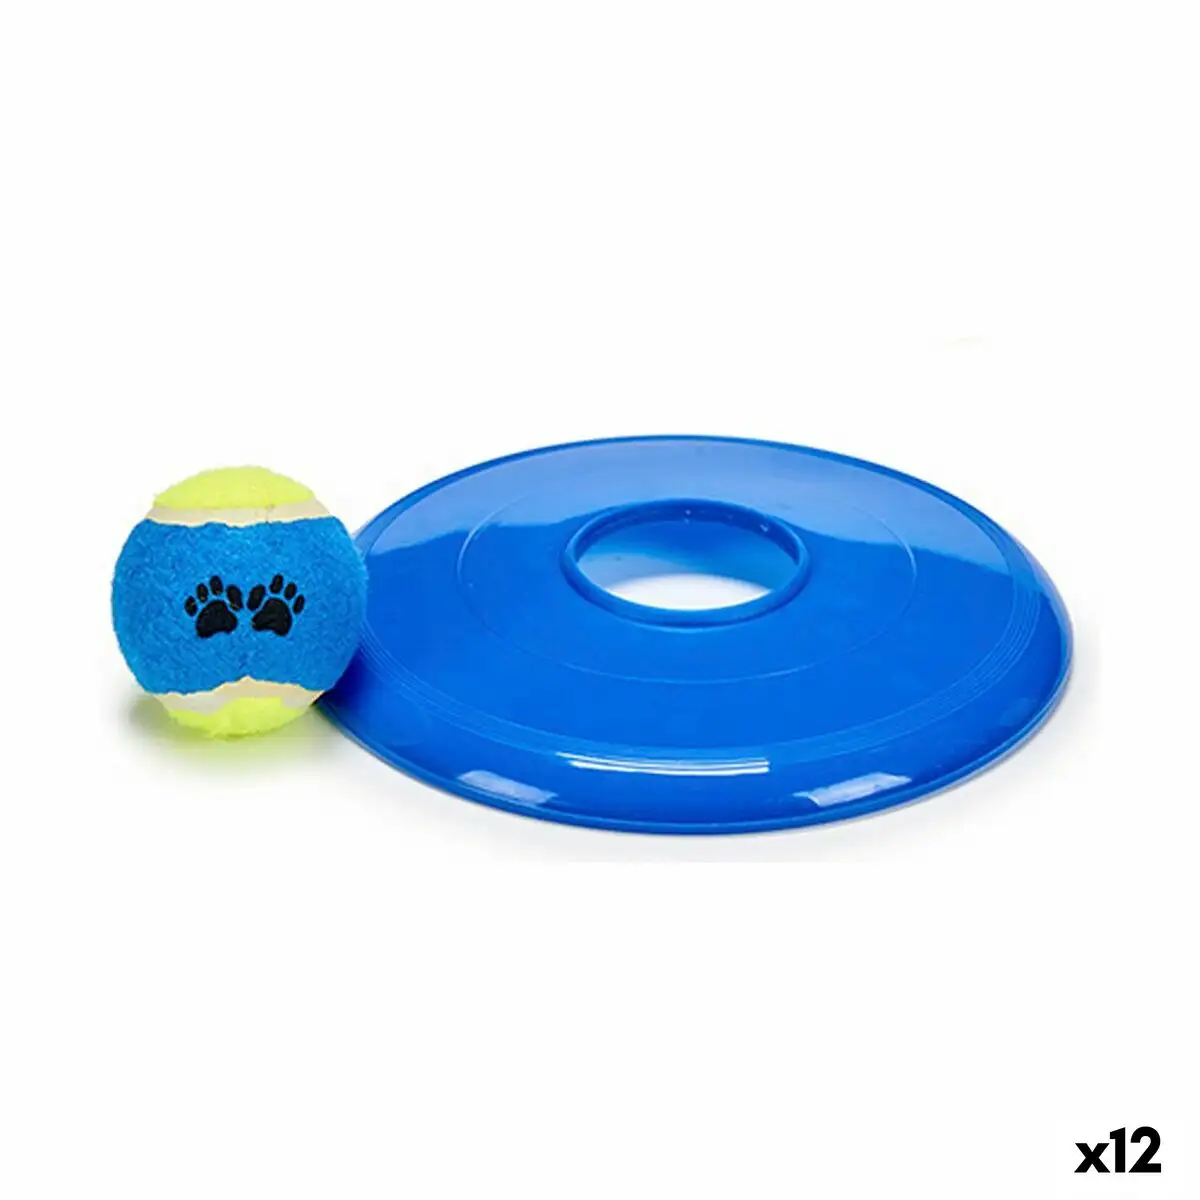 Ensemble de jouet pour chiens ballon frisbee caoutchouc polypropylene 12 unites _5615. Entrez dans l'Univers de DIAYTAR SENEGAL - Où Chaque Produit a sa Place. Explorez nos rayons virtuels et choisissez des articles qui s'intègrent parfaitement à votre style de vie.